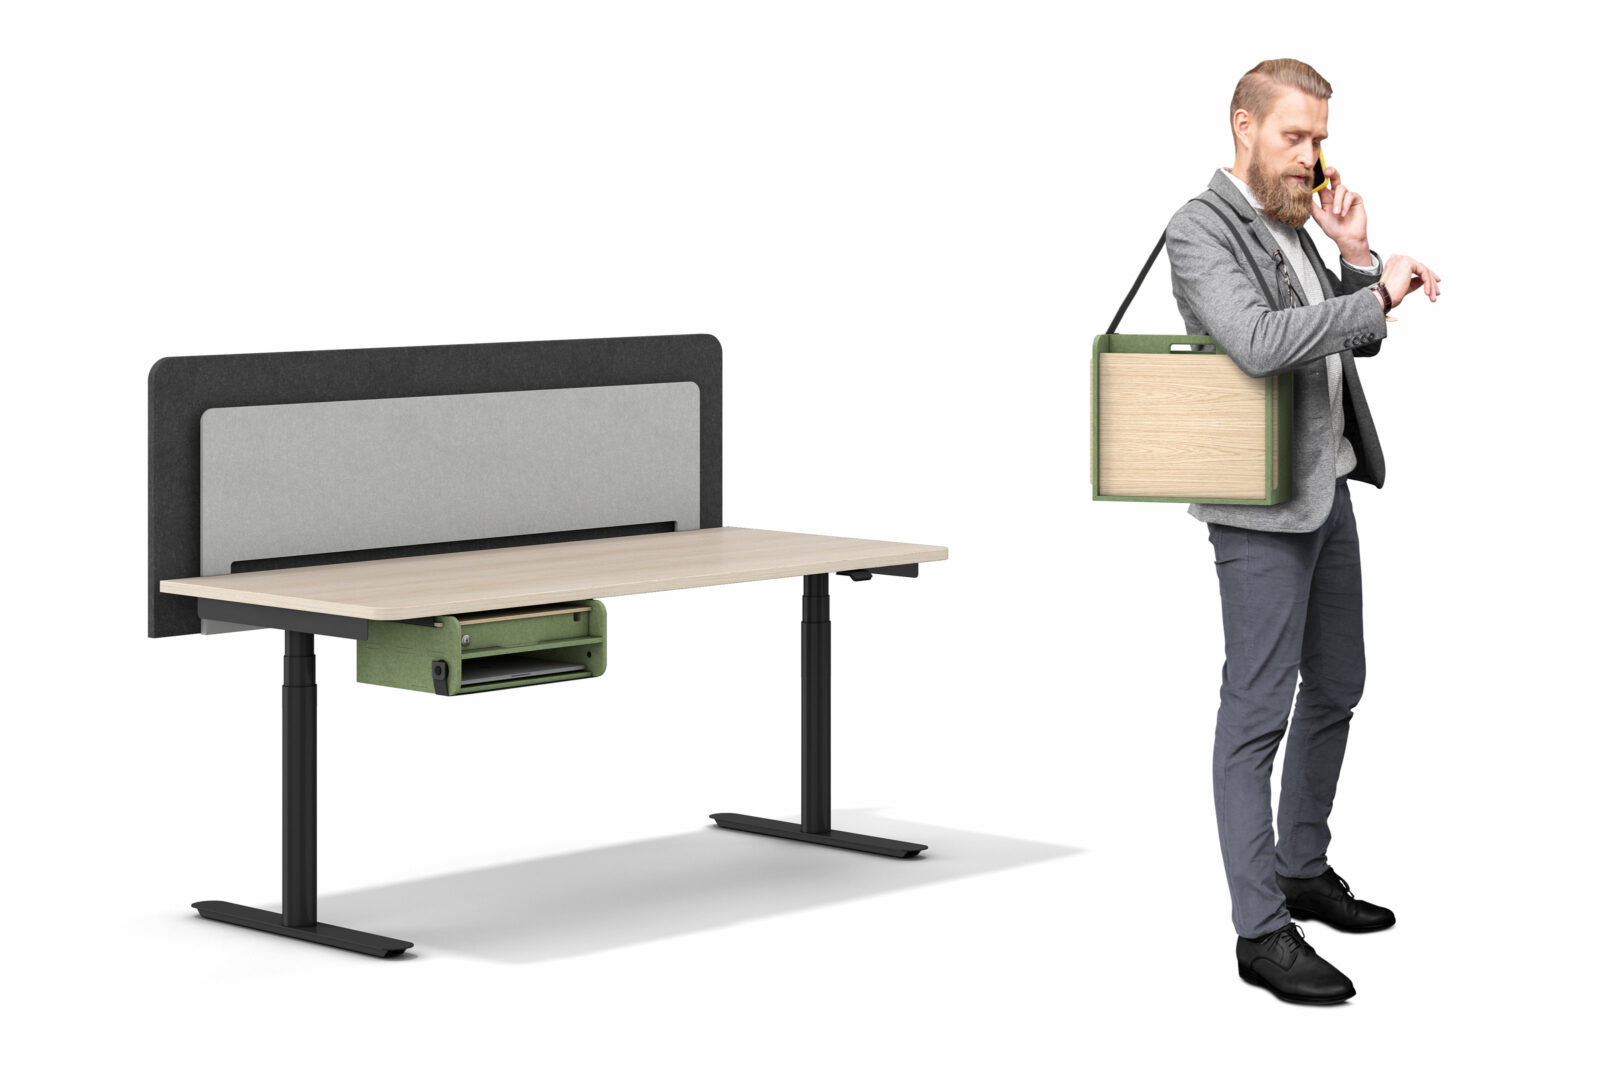 Bildausschnitt zeigt einen Mann der eine Neo Box über der Schulter trägt, links daneben sieht man einen Schreibtsich mit Akustikwand und Neo Box